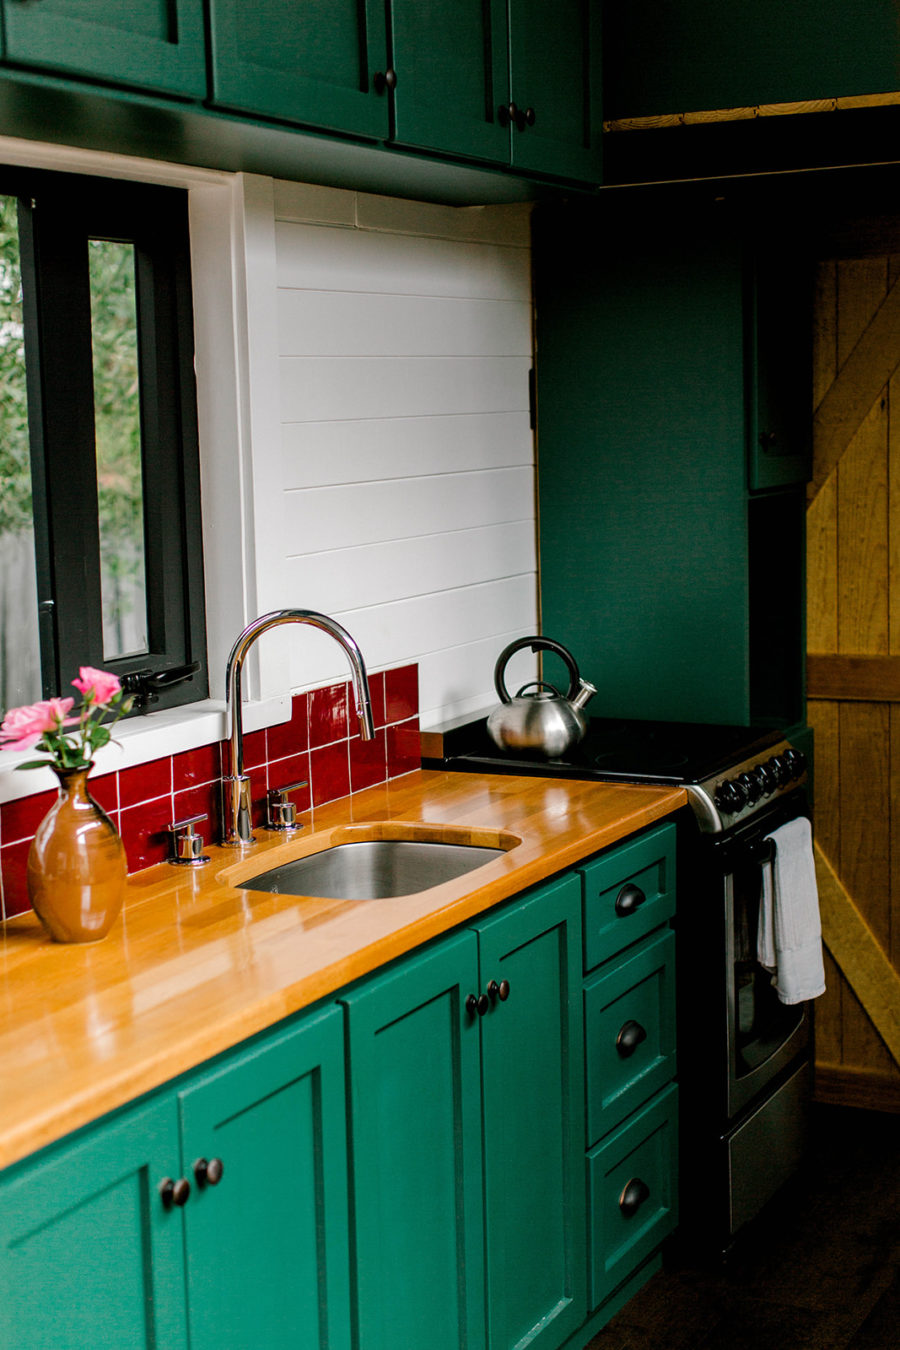 Phòng bếp và khu vực ăn uống sử dụng gam màu xanh ngọc lục bảo kết hợp với những viên gạch mosaic màu đỏ sáng bóng tạo nên vẻ đẹp nổi bật, cuốn hút.